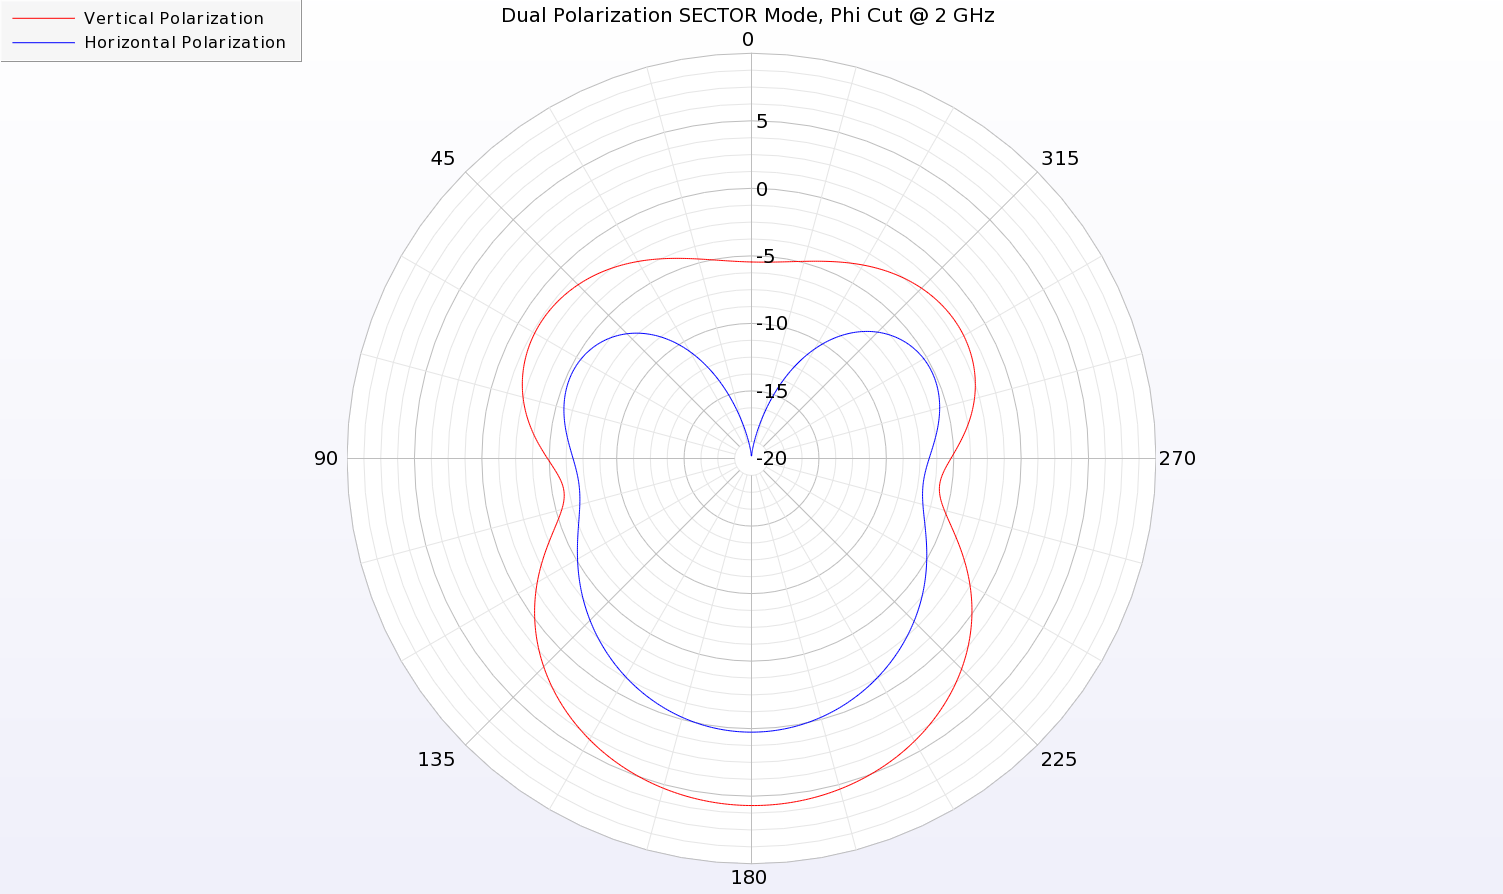 图 14：双极化天线 SECTOR 图案的二维方位切割图，频率为 2 千兆赫。  